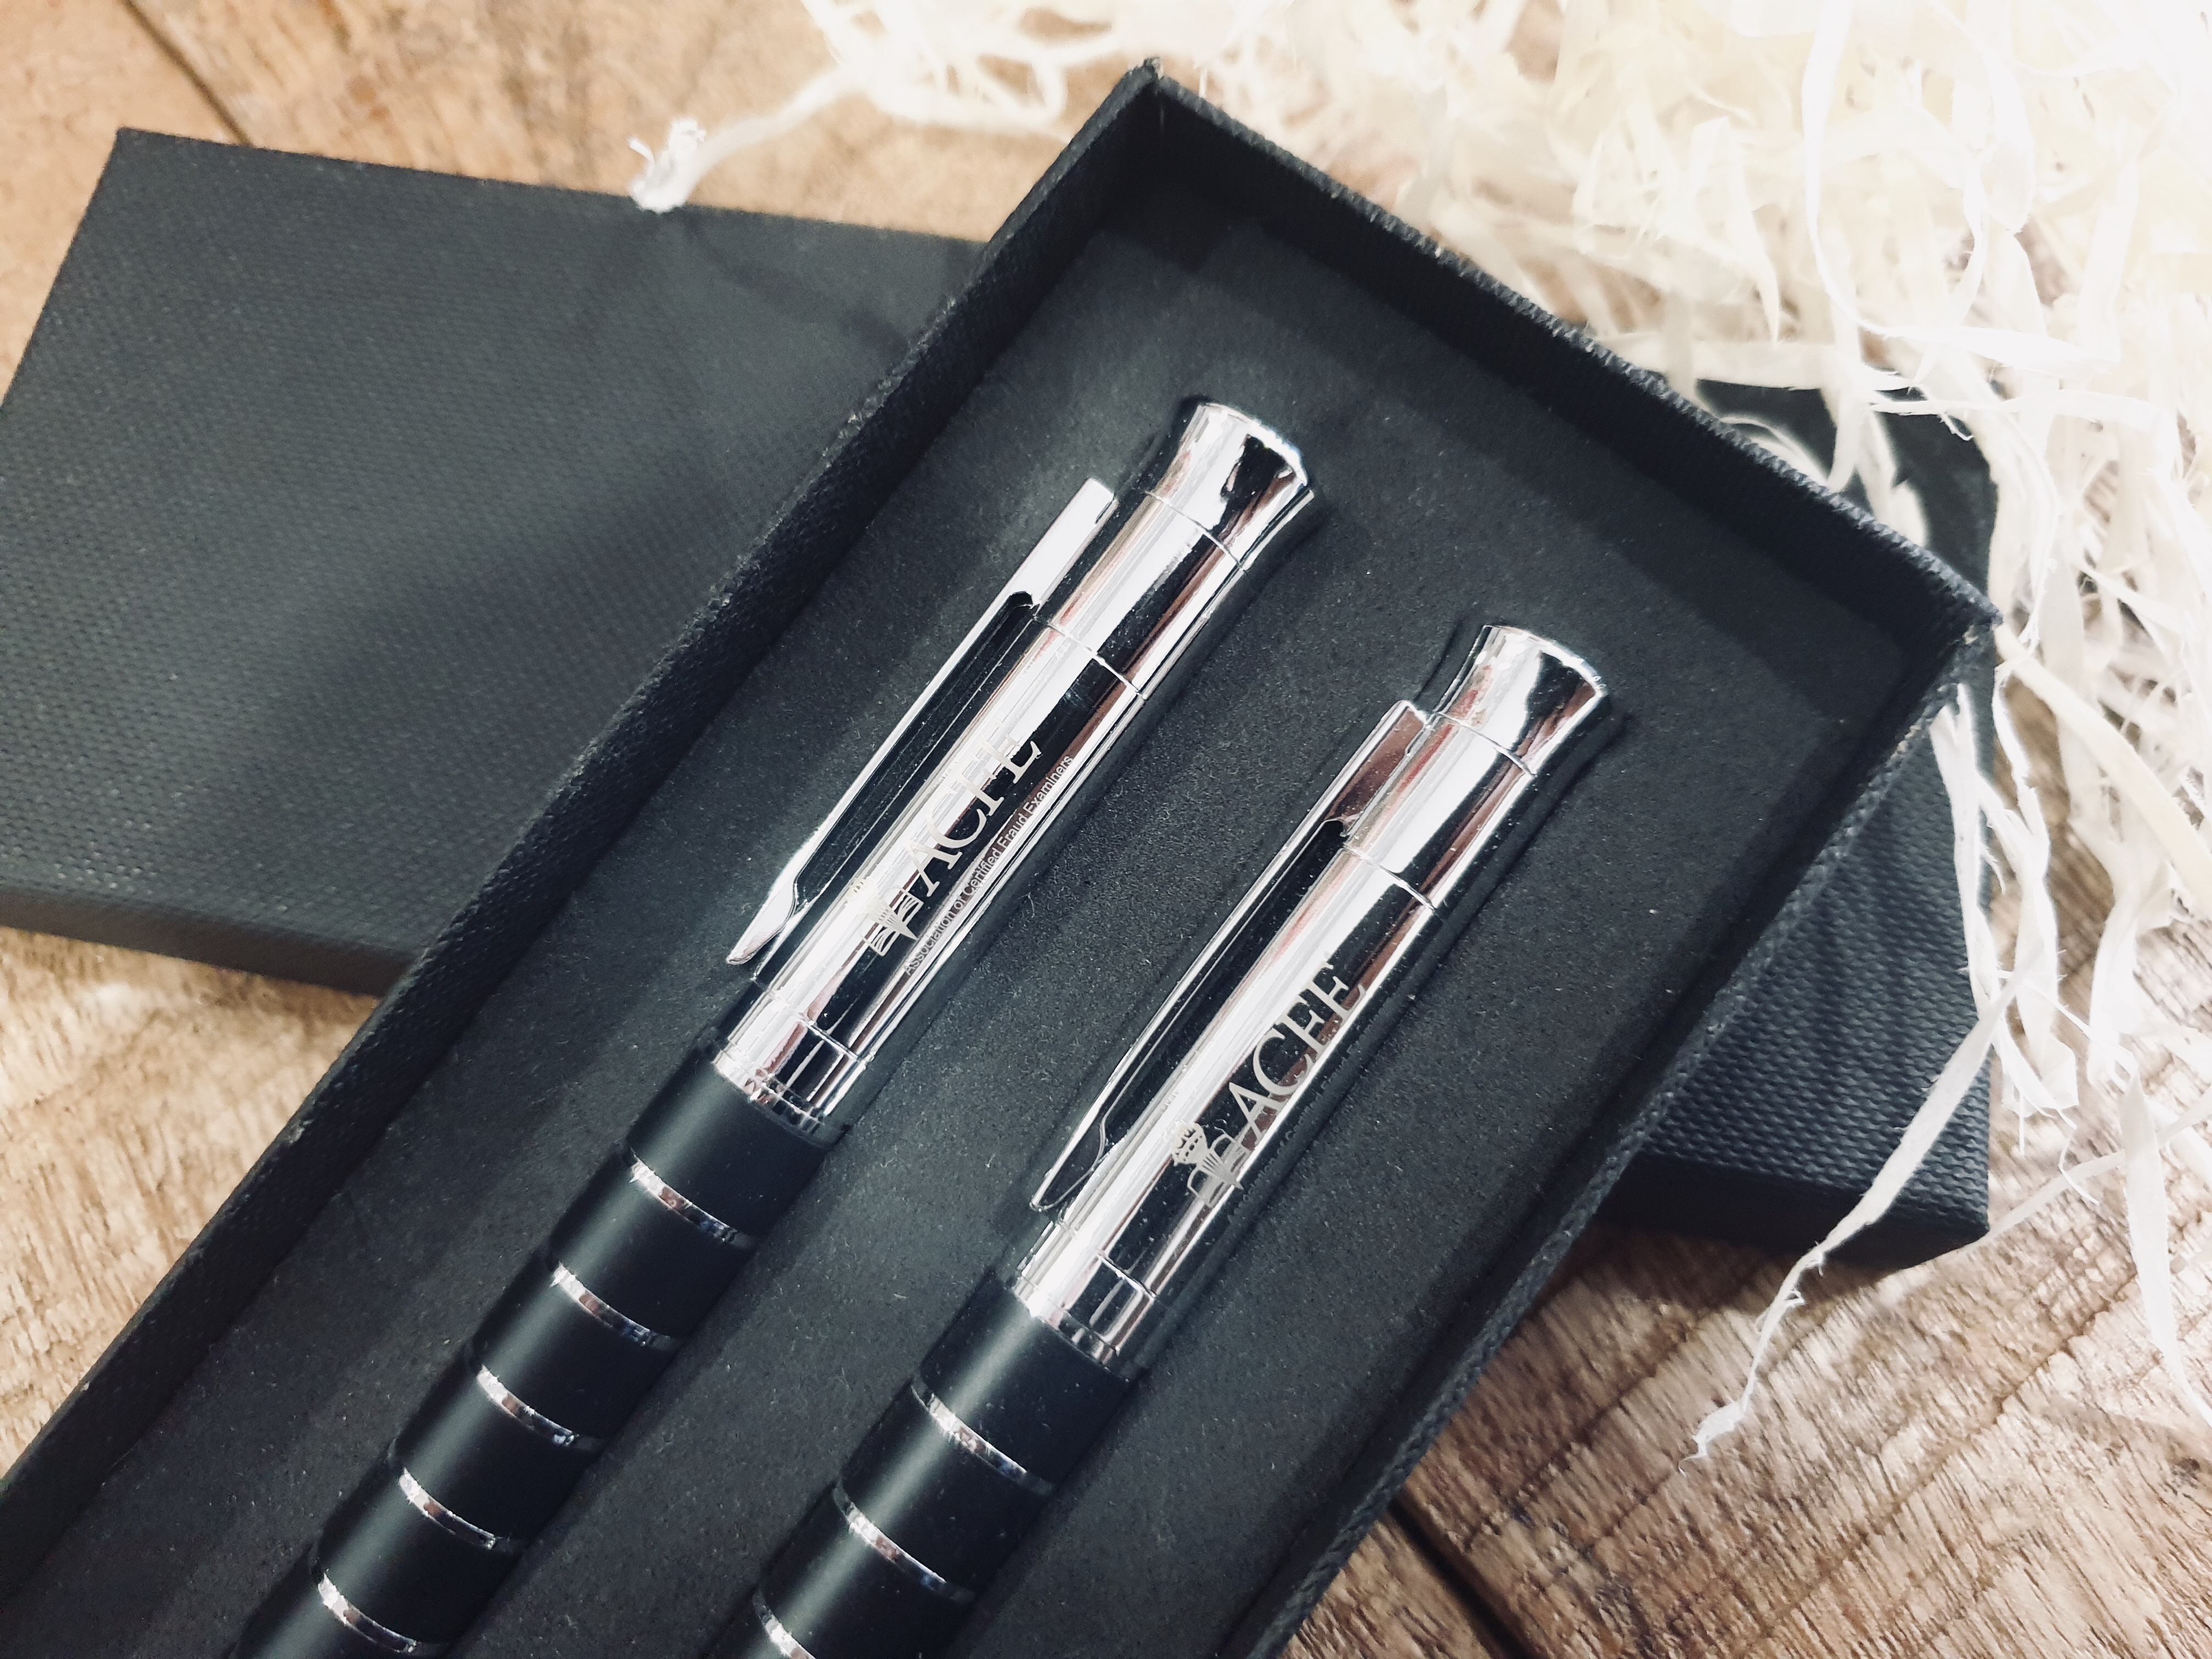 Description ACFE Branded Pen & Pencil set